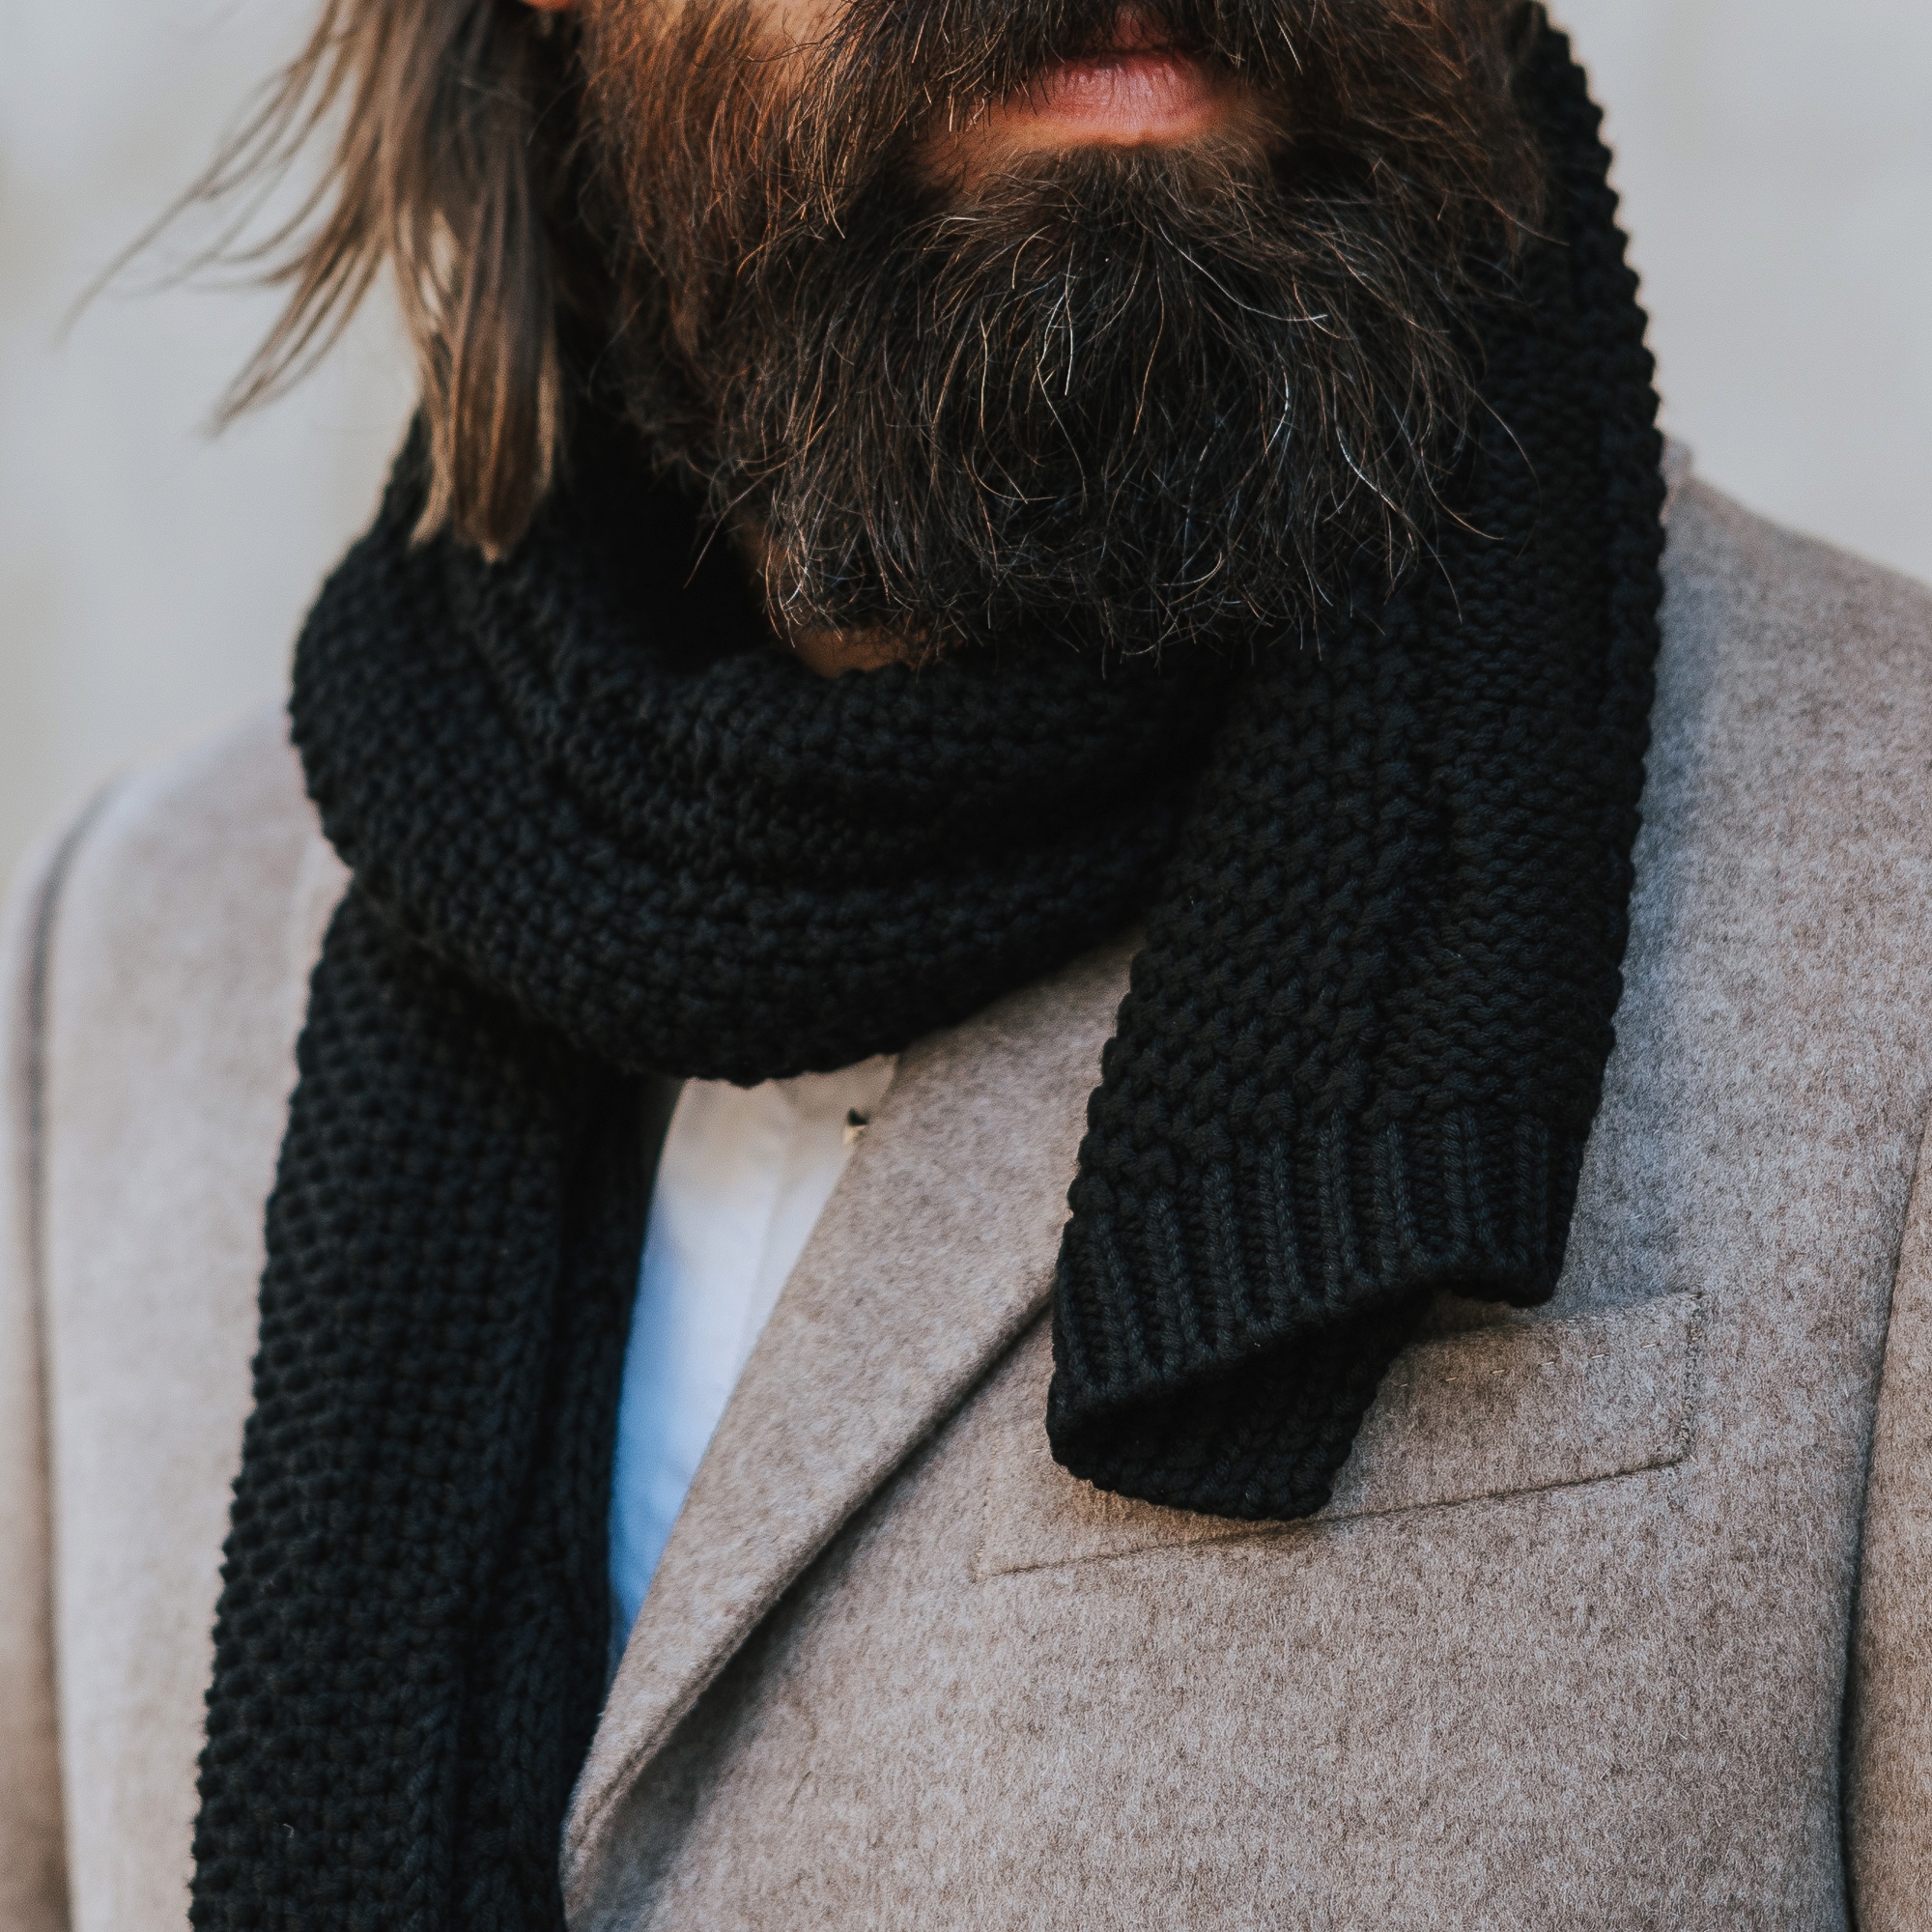 Las bufandas: 8 ideas geniales para